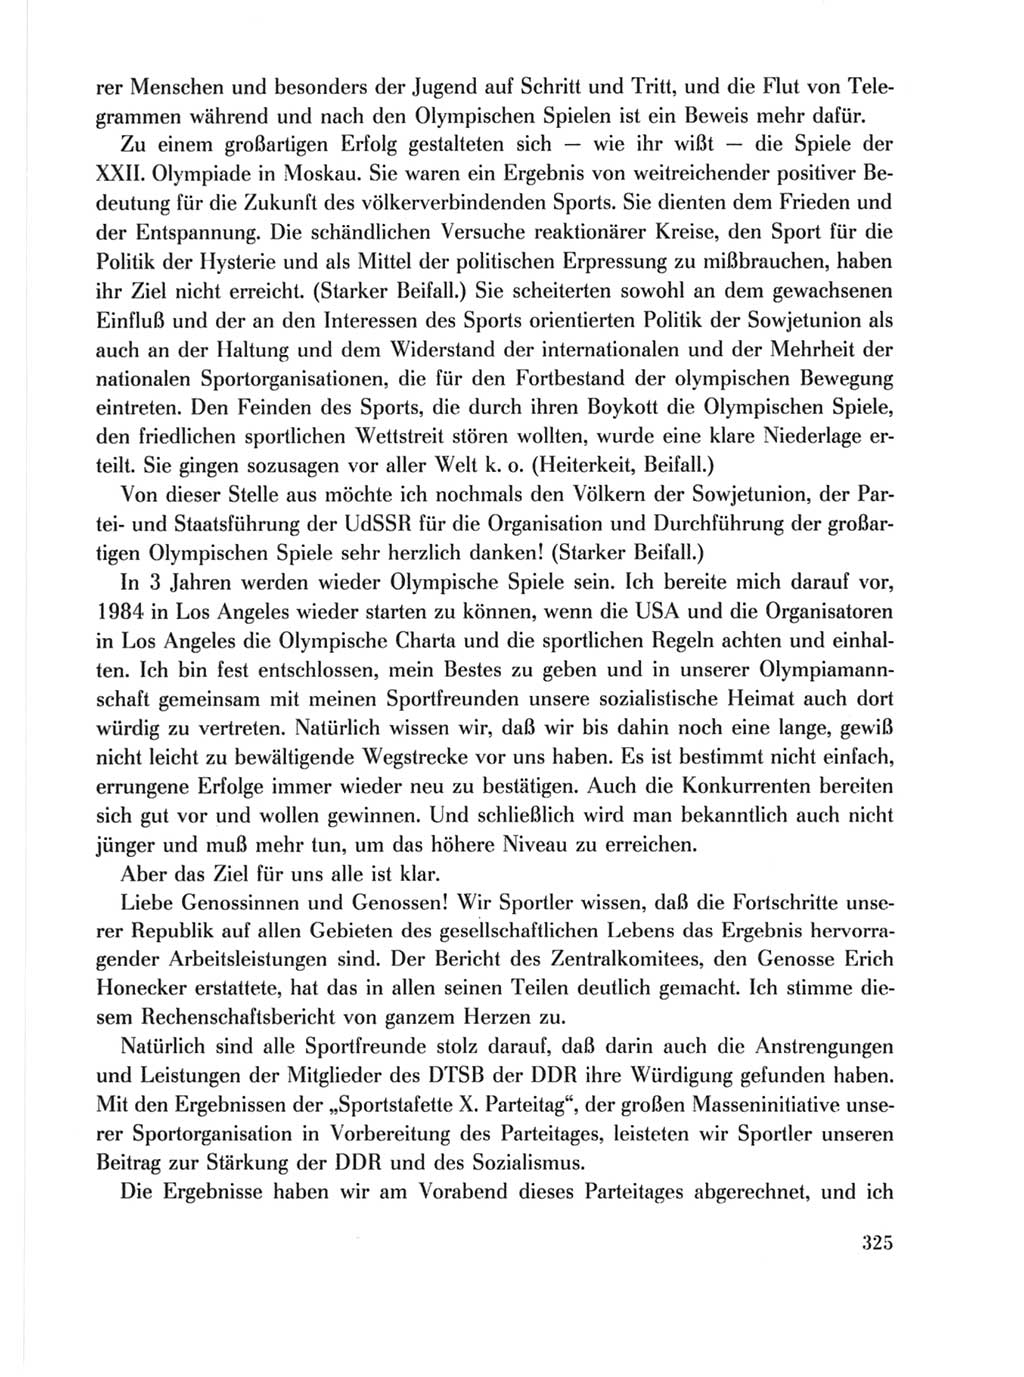 Protokoll der Verhandlungen des Ⅹ. Parteitages der Sozialistischen Einheitspartei Deutschlands (SED) [Deutsche Demokratische Republik (DDR)] 1981, Band 1, Seite 325 (Prot. Verh. Ⅹ. PT SED DDR 1981, Bd. 1, S. 325)